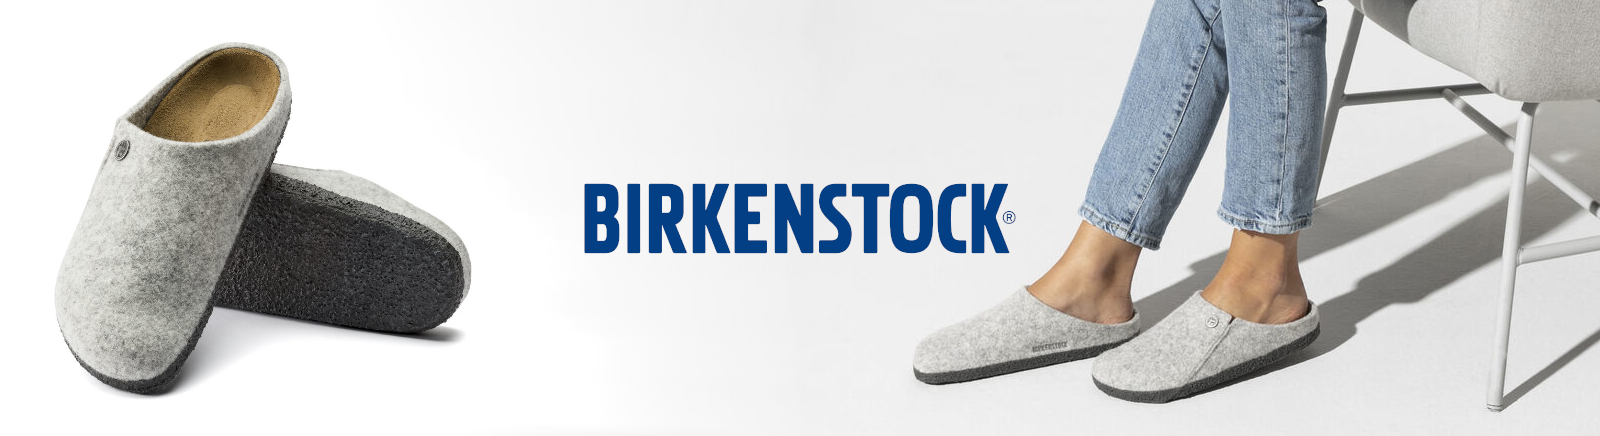 Birkenstock Zehentrenner für Herren im Online-Shop von GISY kaufen